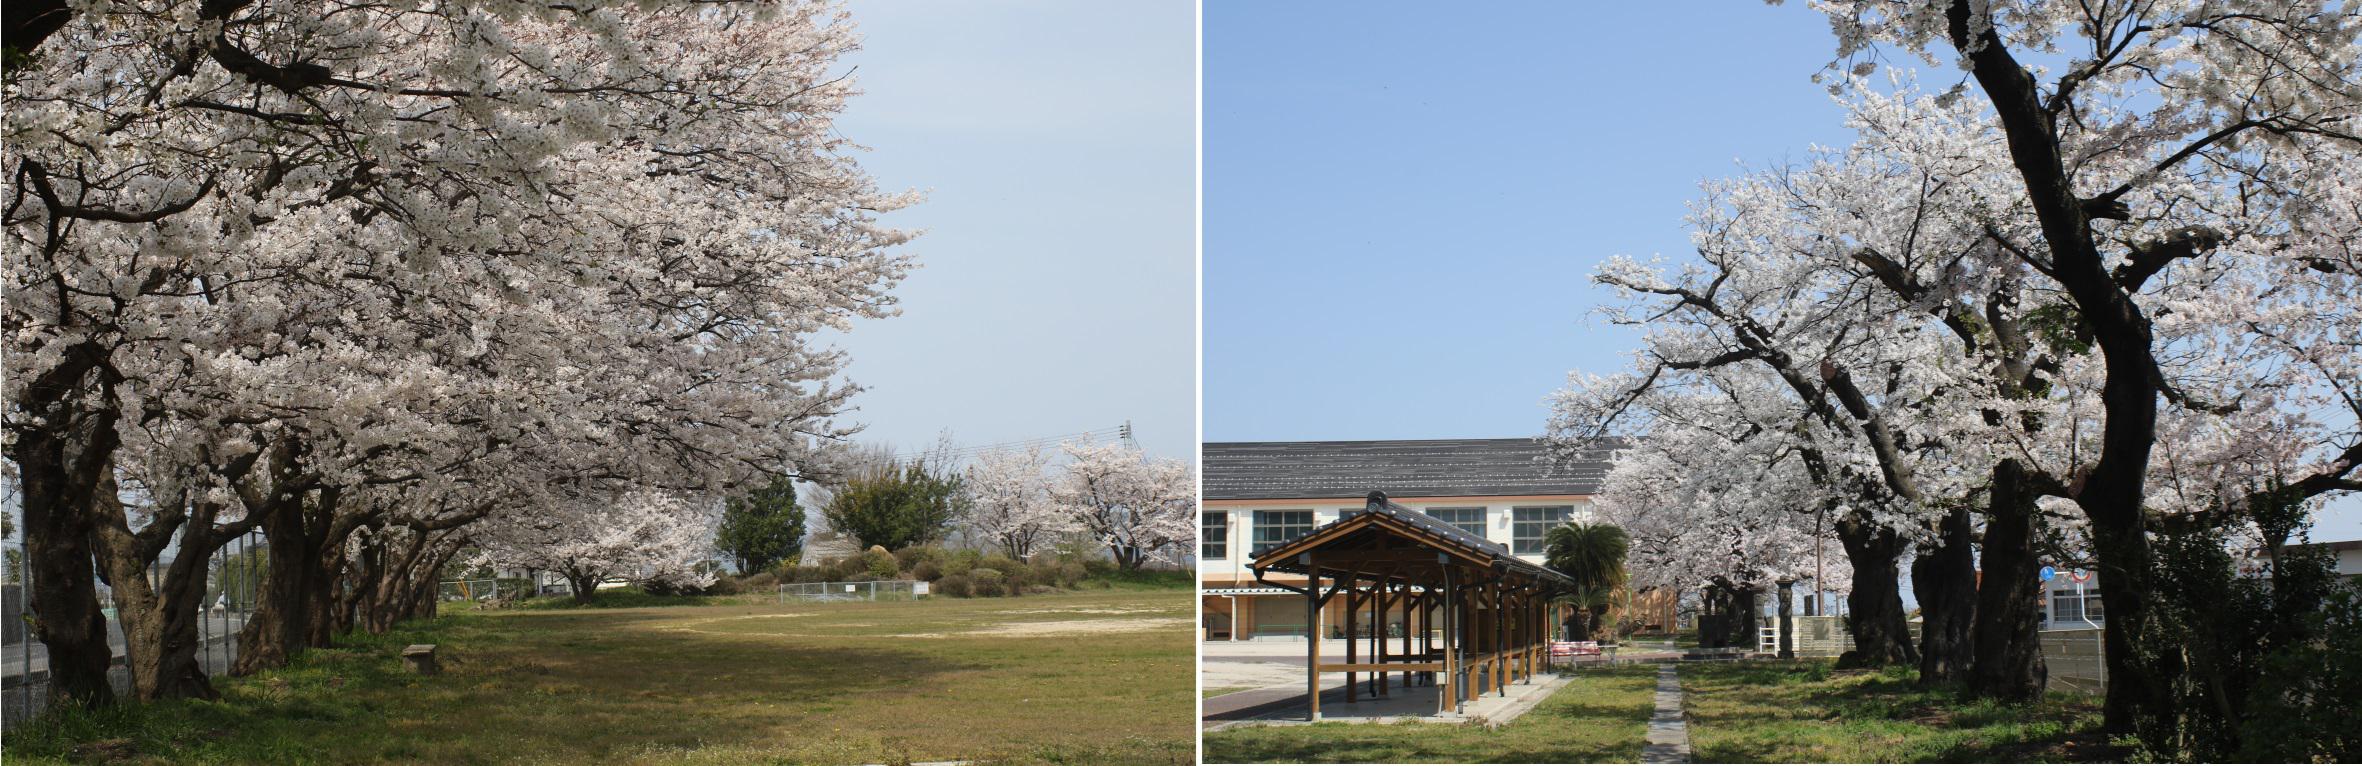 校庭と前庭の桜